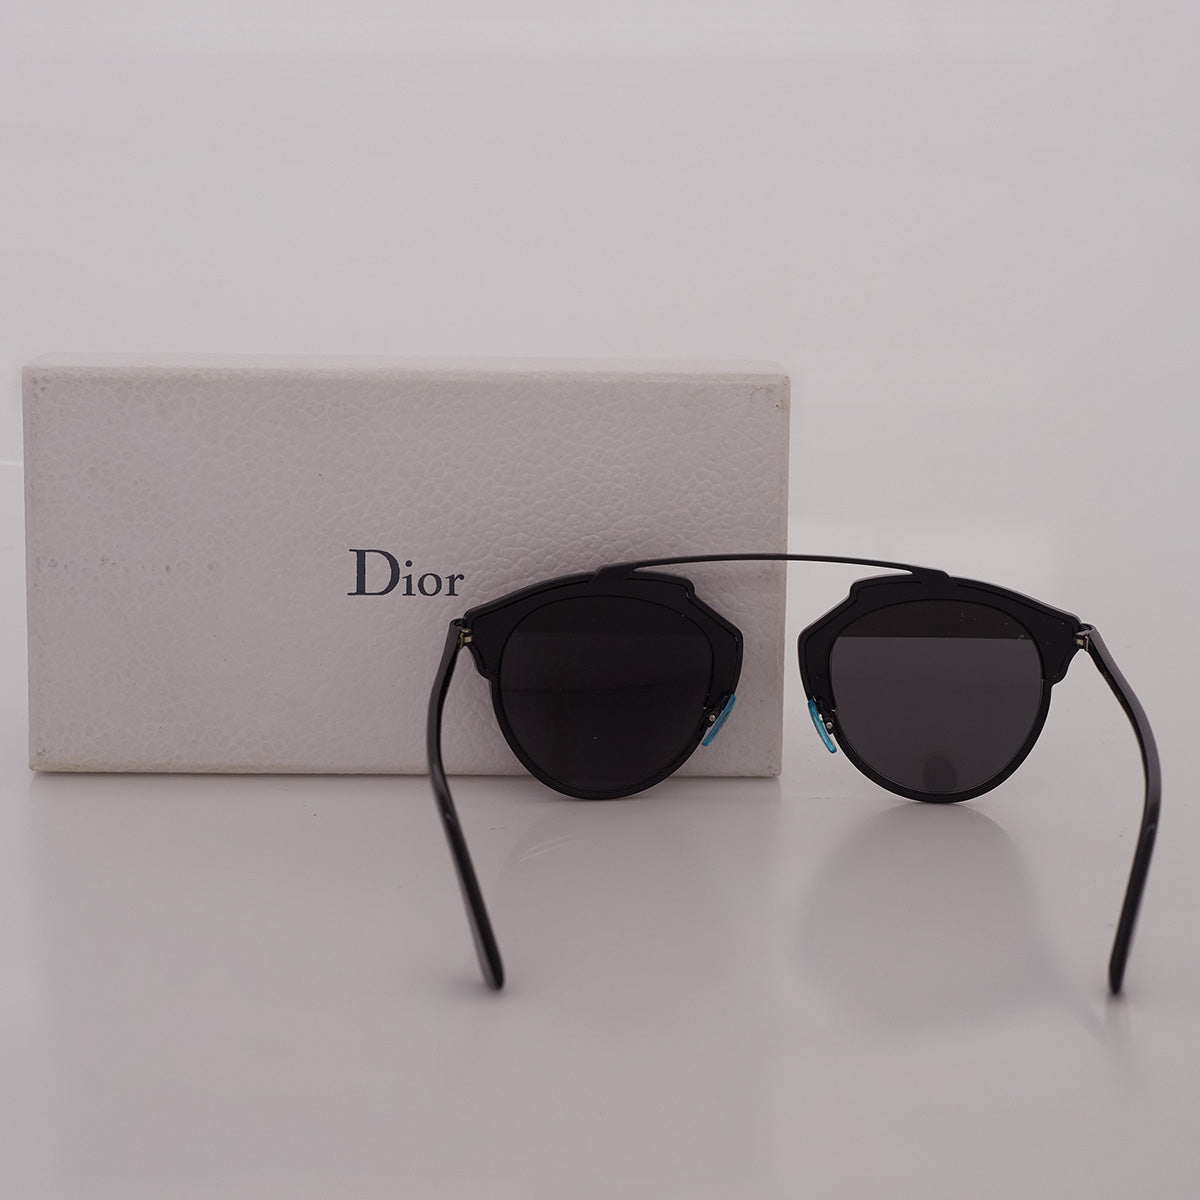 Óculos Christian Dior SoReal Preto